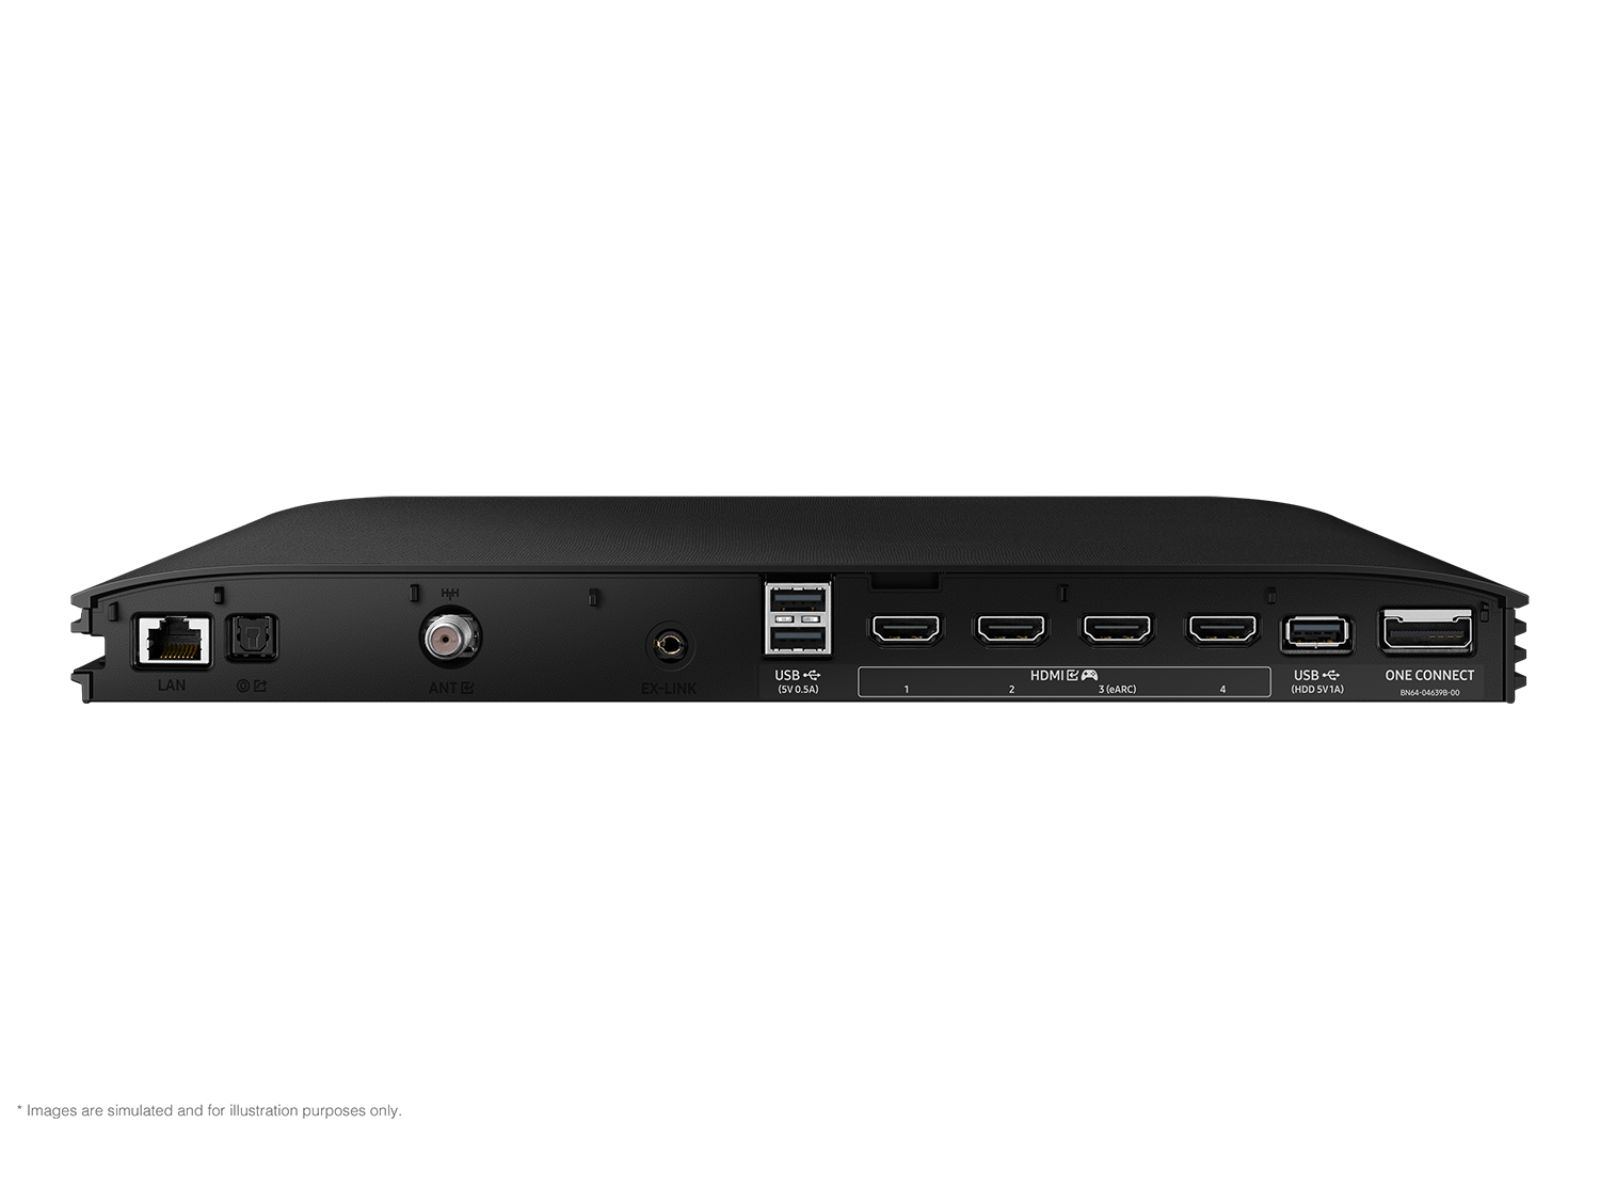 Samsung Neo QLED 8K QN900C (QE65QN900) 8K TV review •